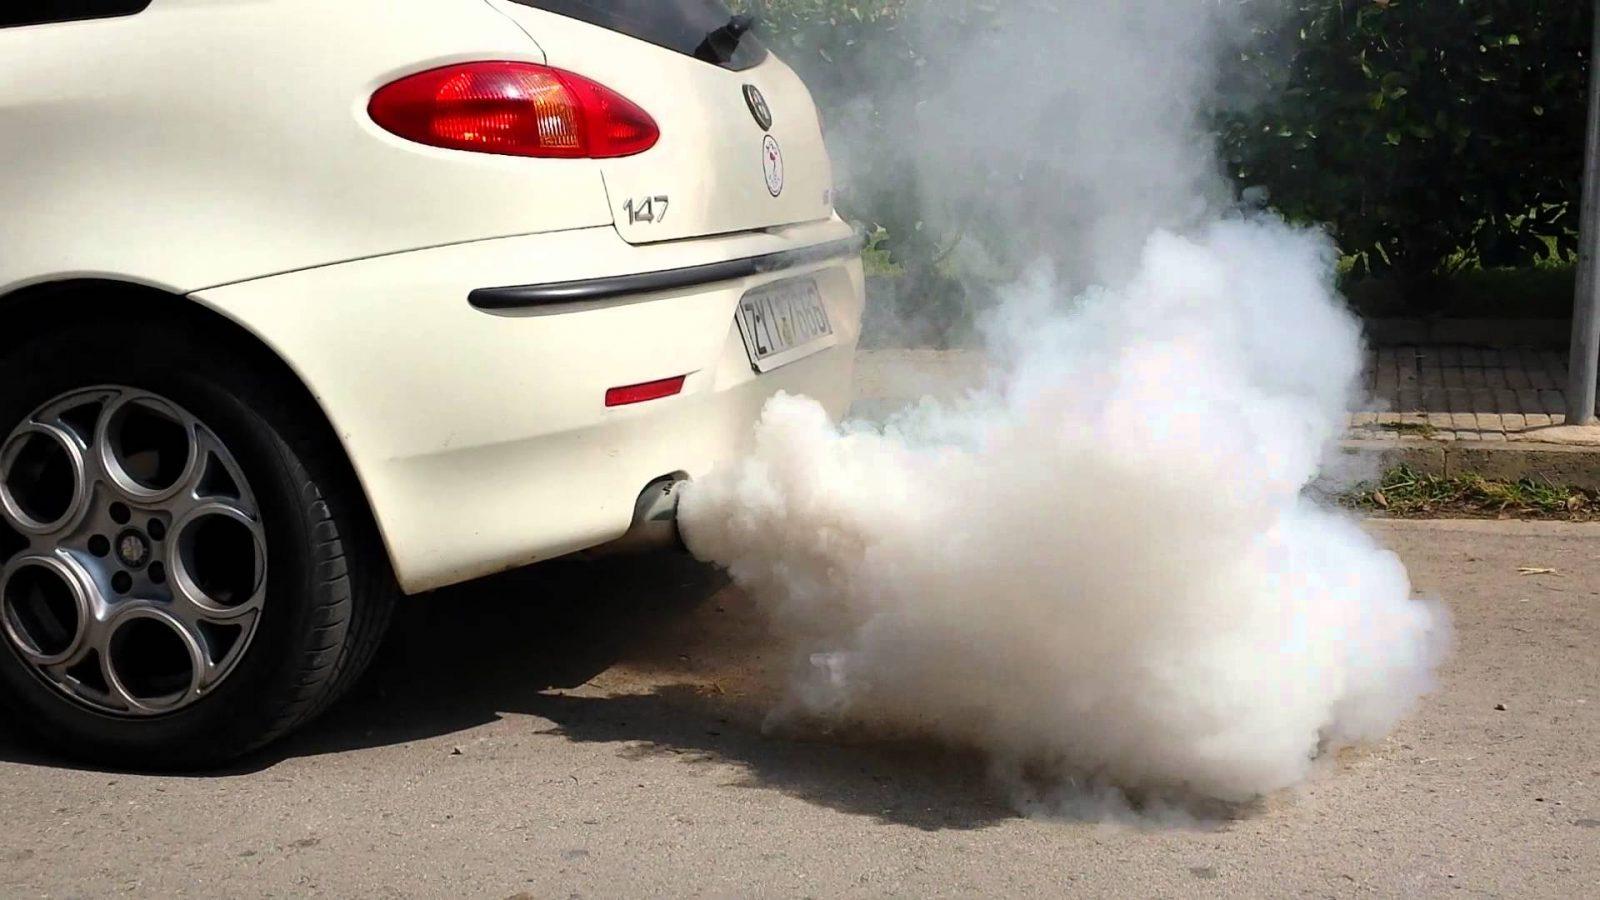 Xe nhả nhiều khói khi chạy và có mùi thường liên quan đến động cơ của xe